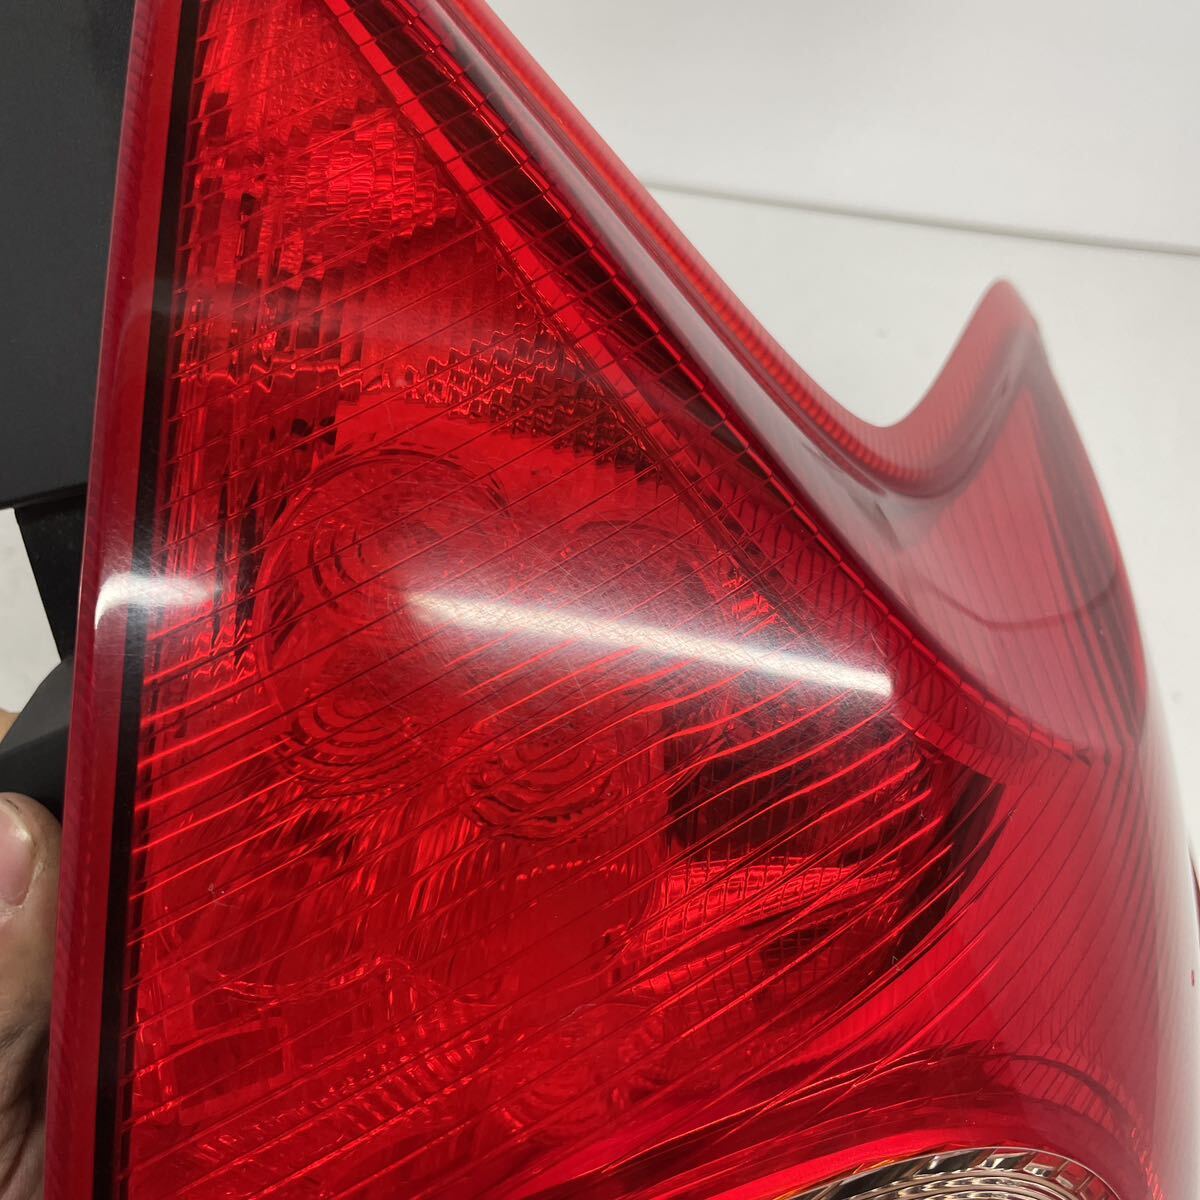 [ покрытие settled ] Nissan NE12 E12 Note оригинальный задние фонари задний фонарь линзы левый и правый в комплекте LR LED лампочка-индикатор проверка settled ICHIKOH D117 P60309